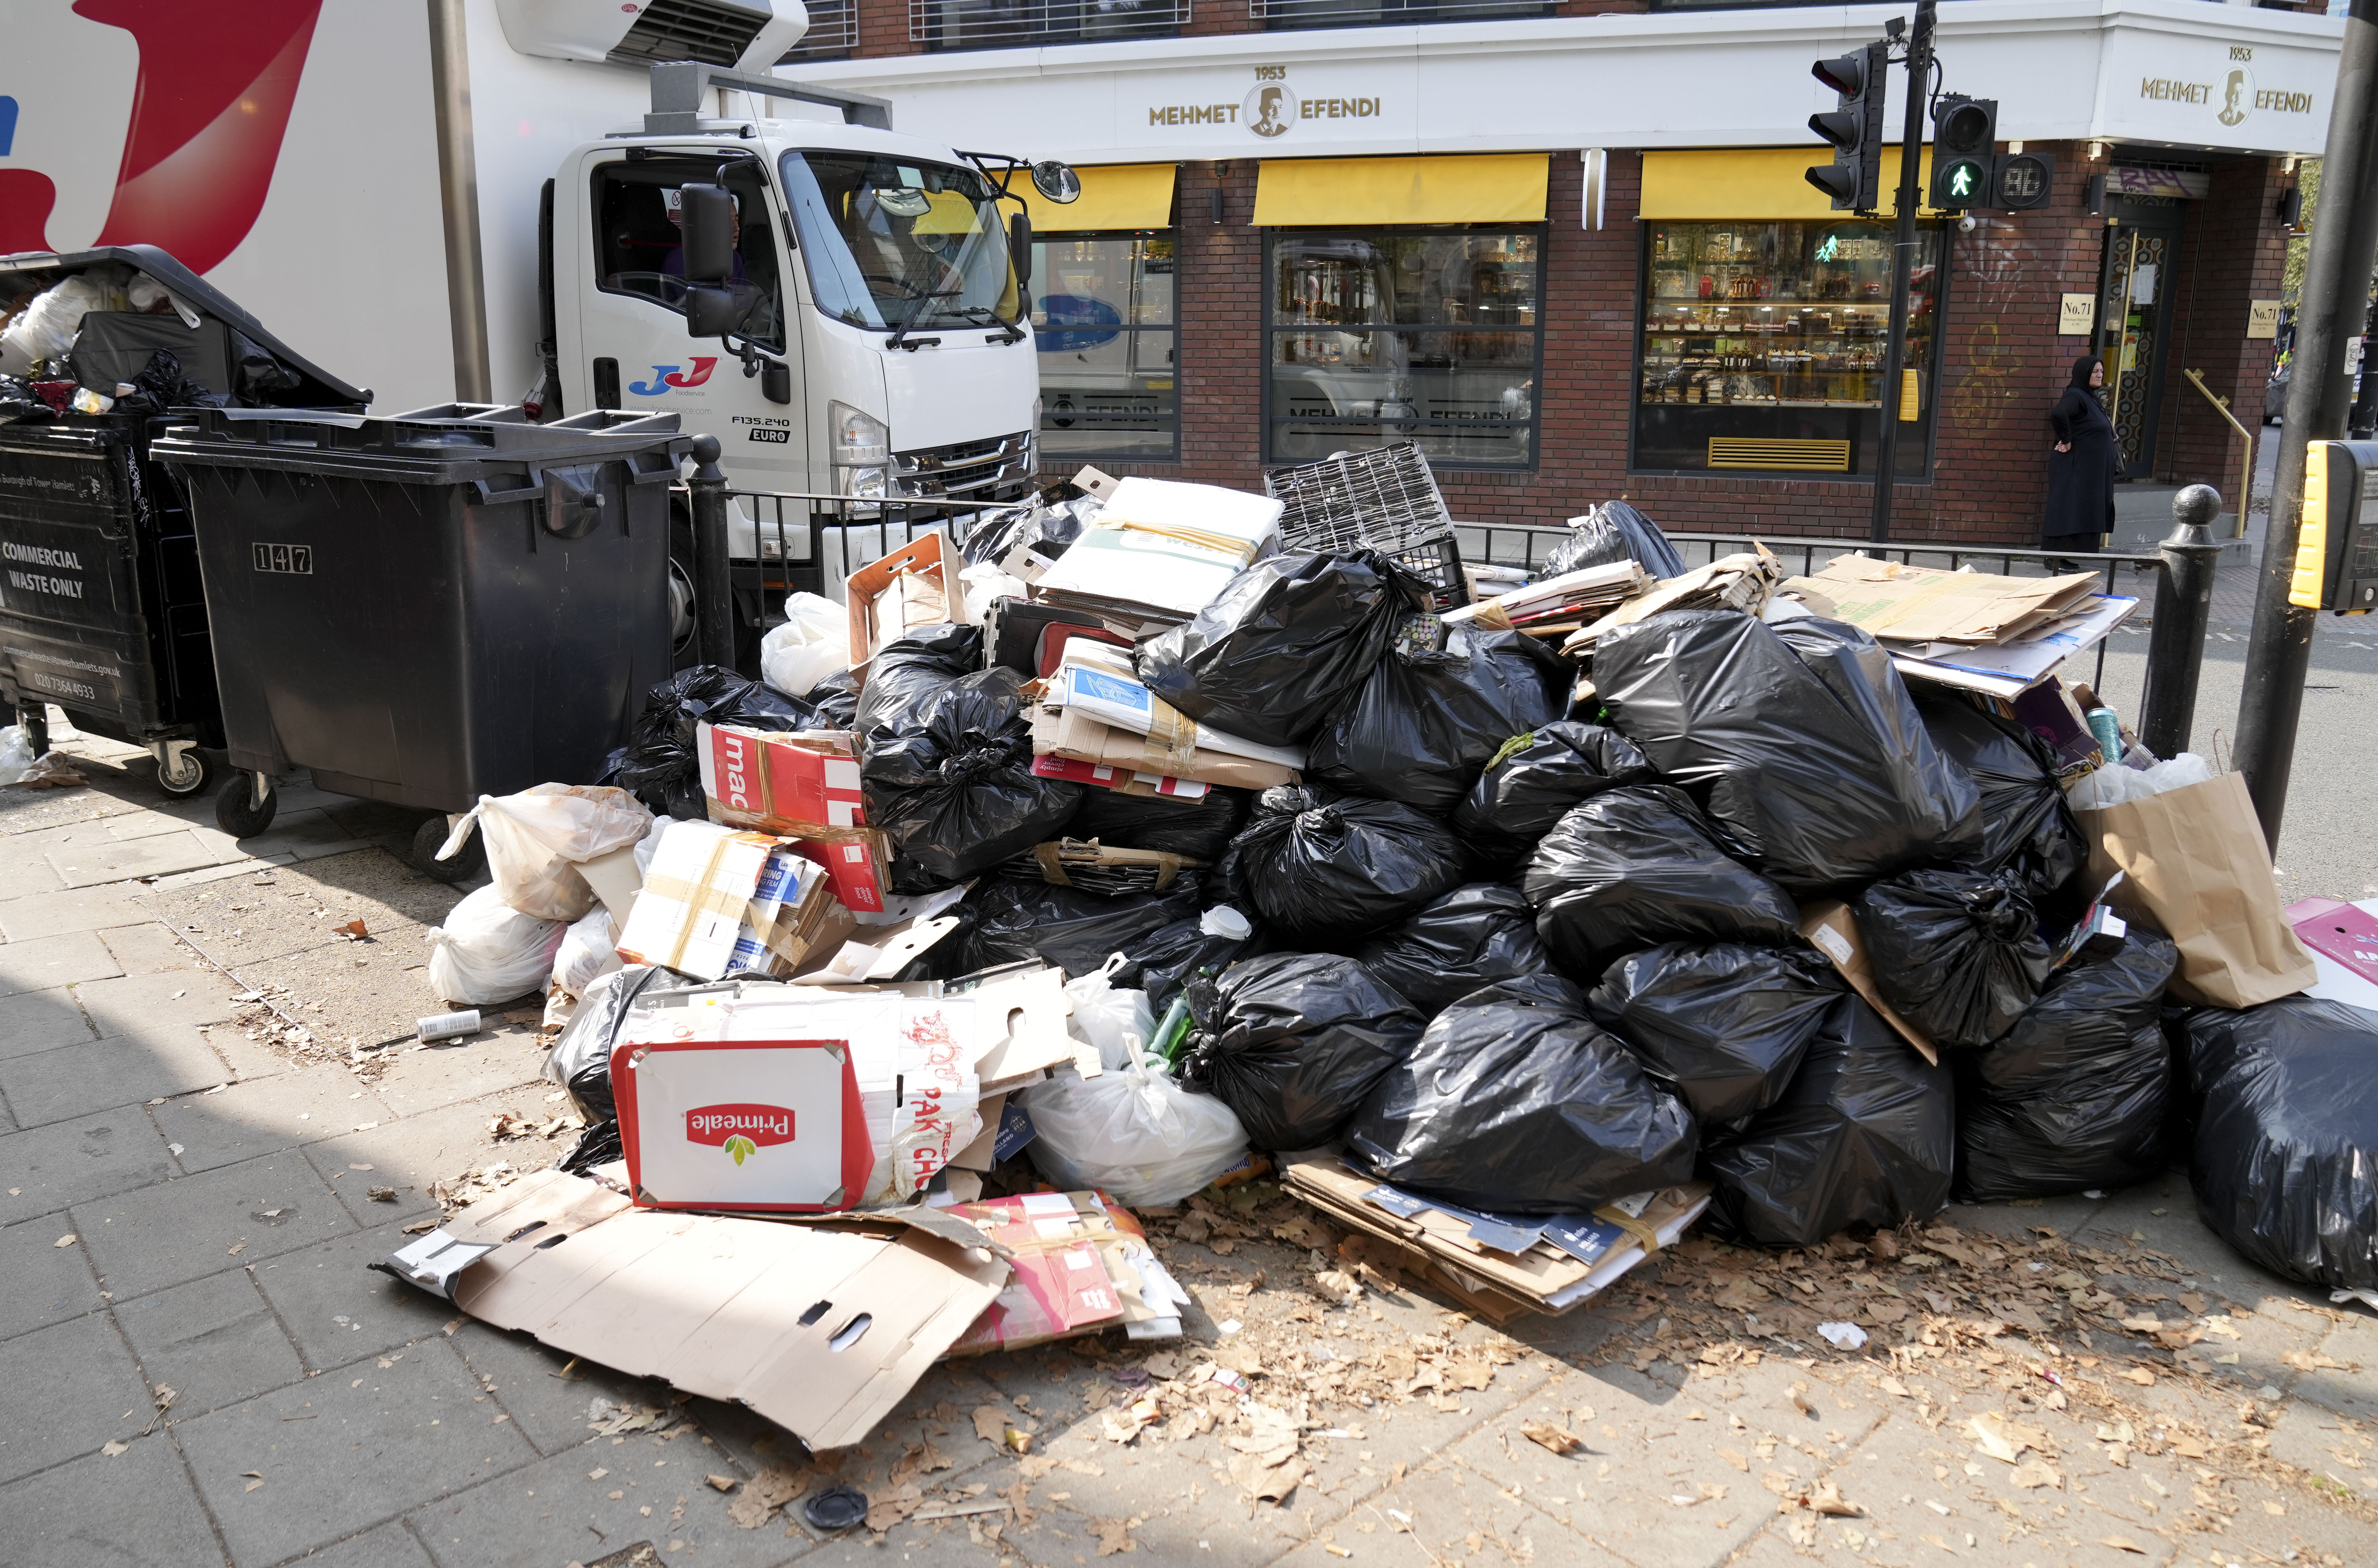 Im Osten Londons stapeln sich die Müllsäcke